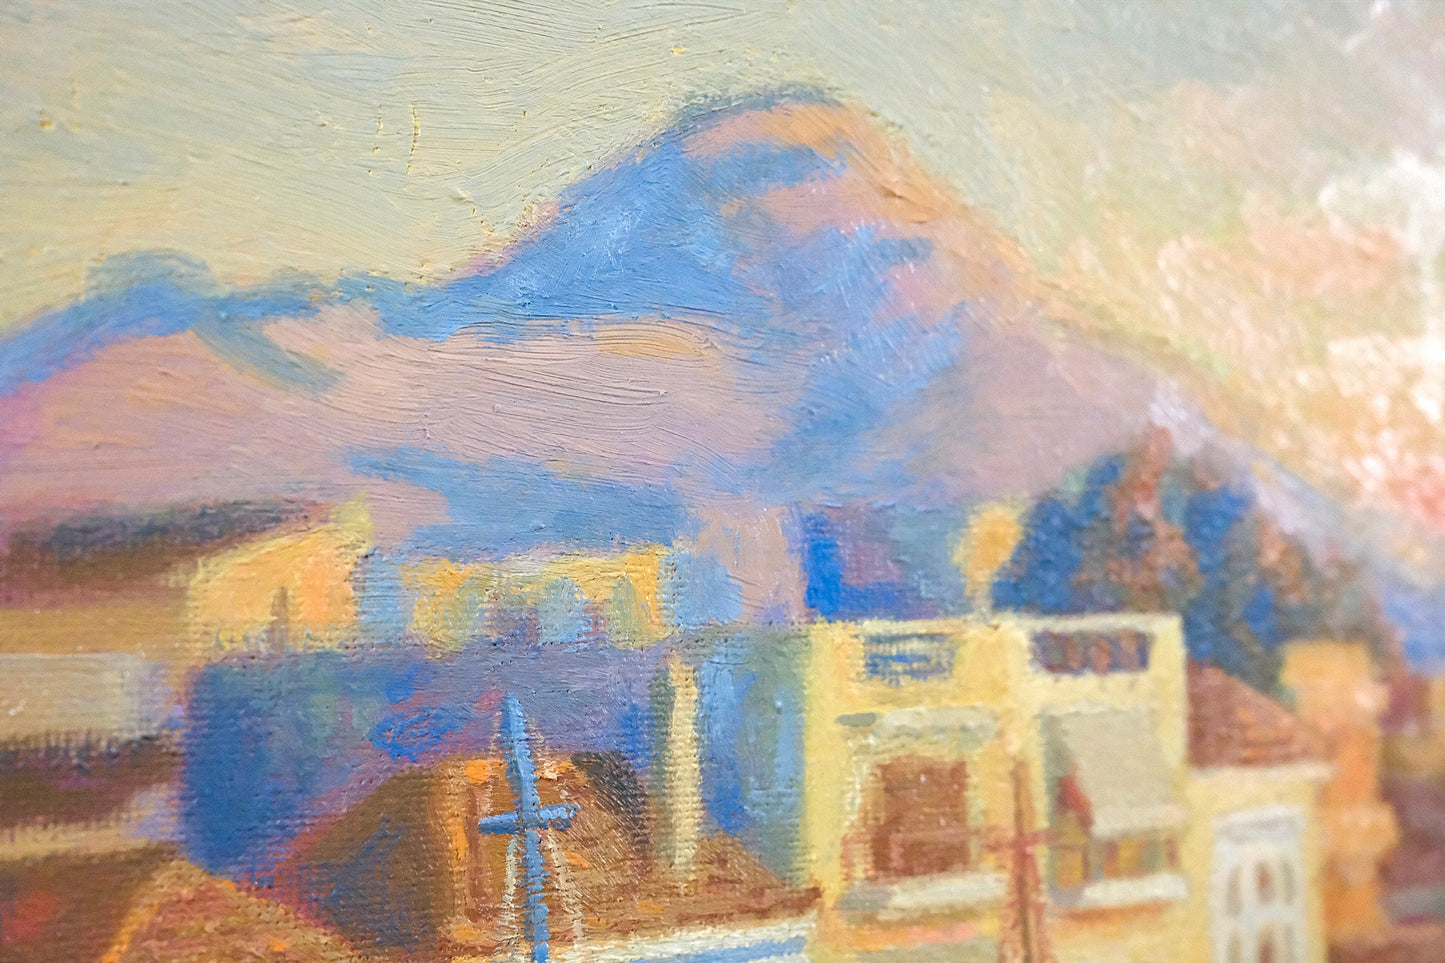 Original Painting: Port of Aegina During Golden Hour